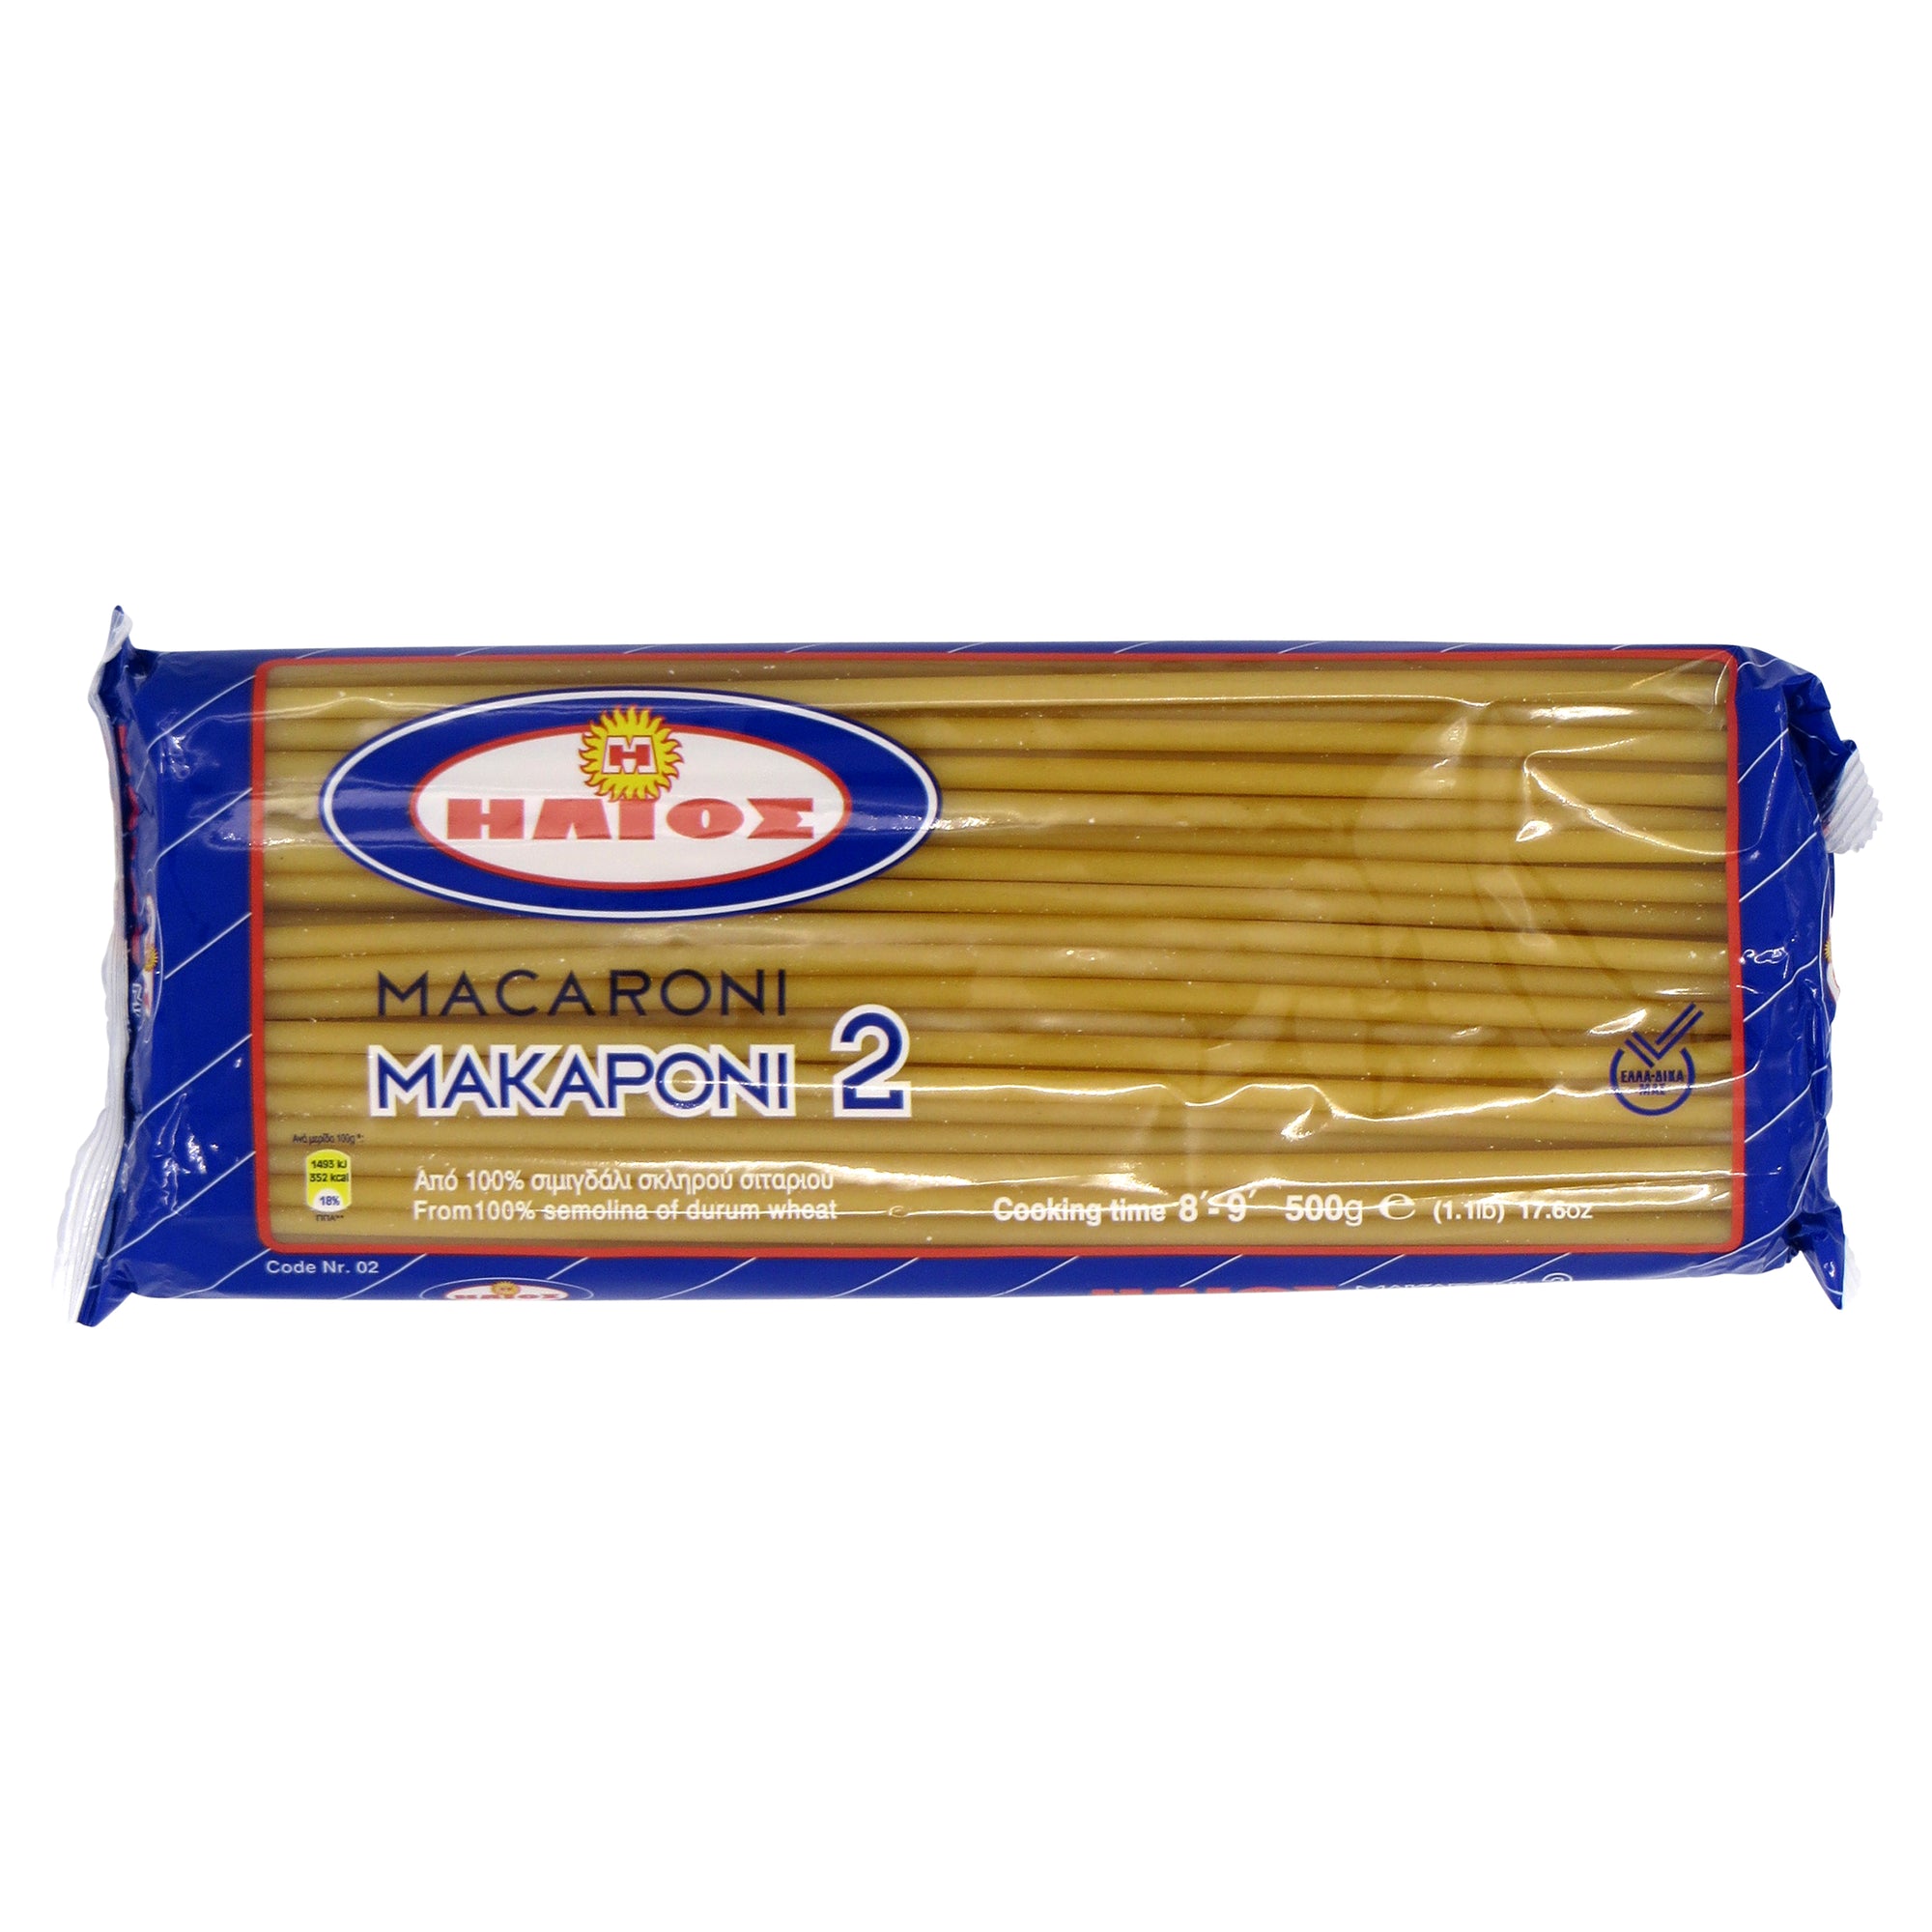 'Helios' Macaroni #2 500g